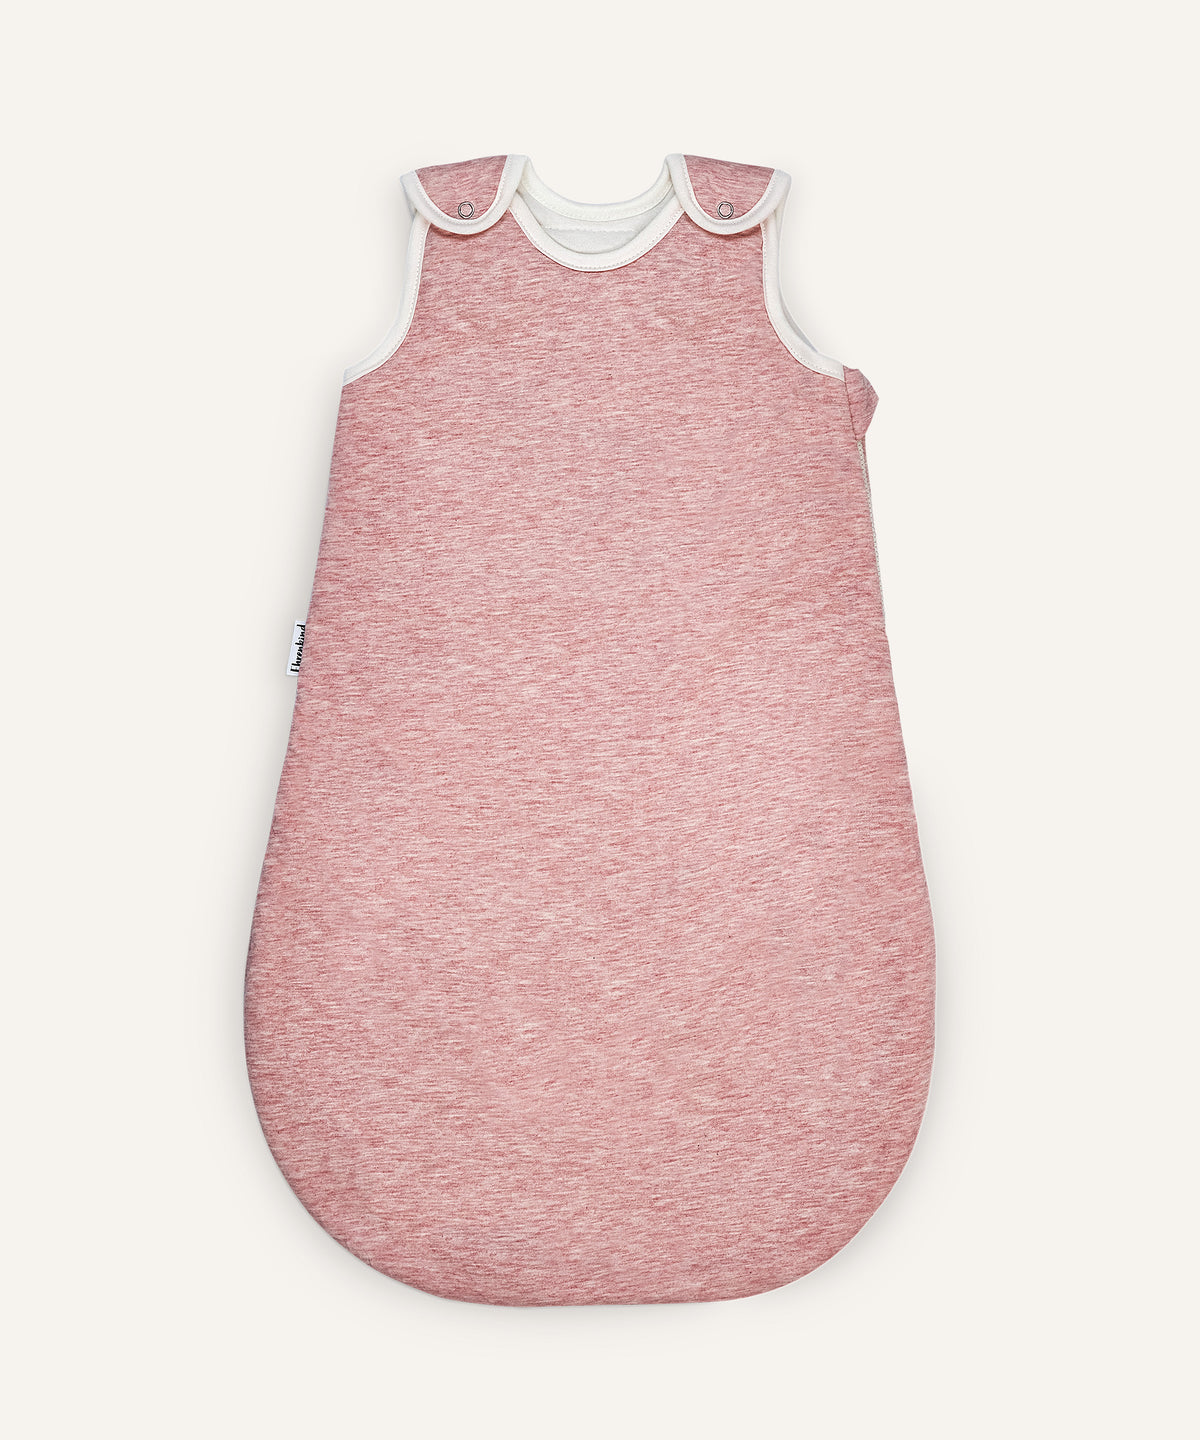 Babyschlafsack rund mit Wollfüllung rosé.